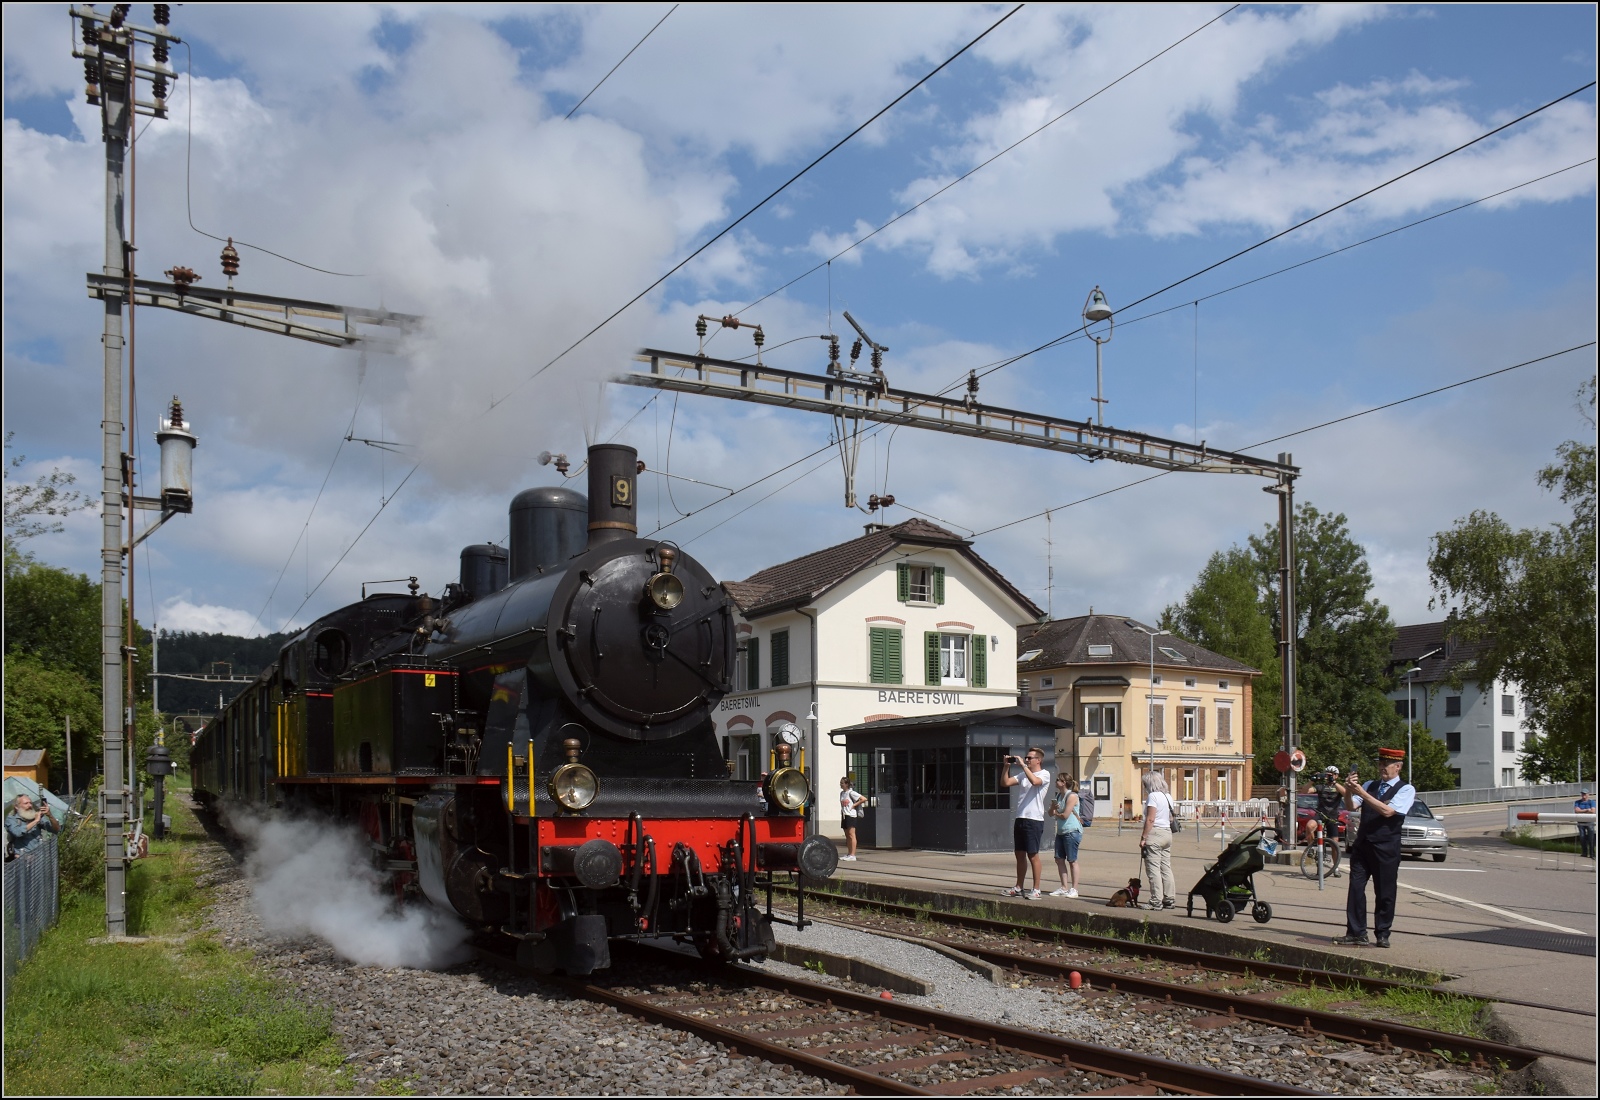 Fahrtag im Zürcher Oberland. 

Abfahrt des Museumszuges mit Eb 3/5 der BT in Bäretswil. Trotz zweiwöchiger Betriebstage ist die Begeisterung der Eisenbahnfans an allen Ecken sichtbar. Juli 2023.